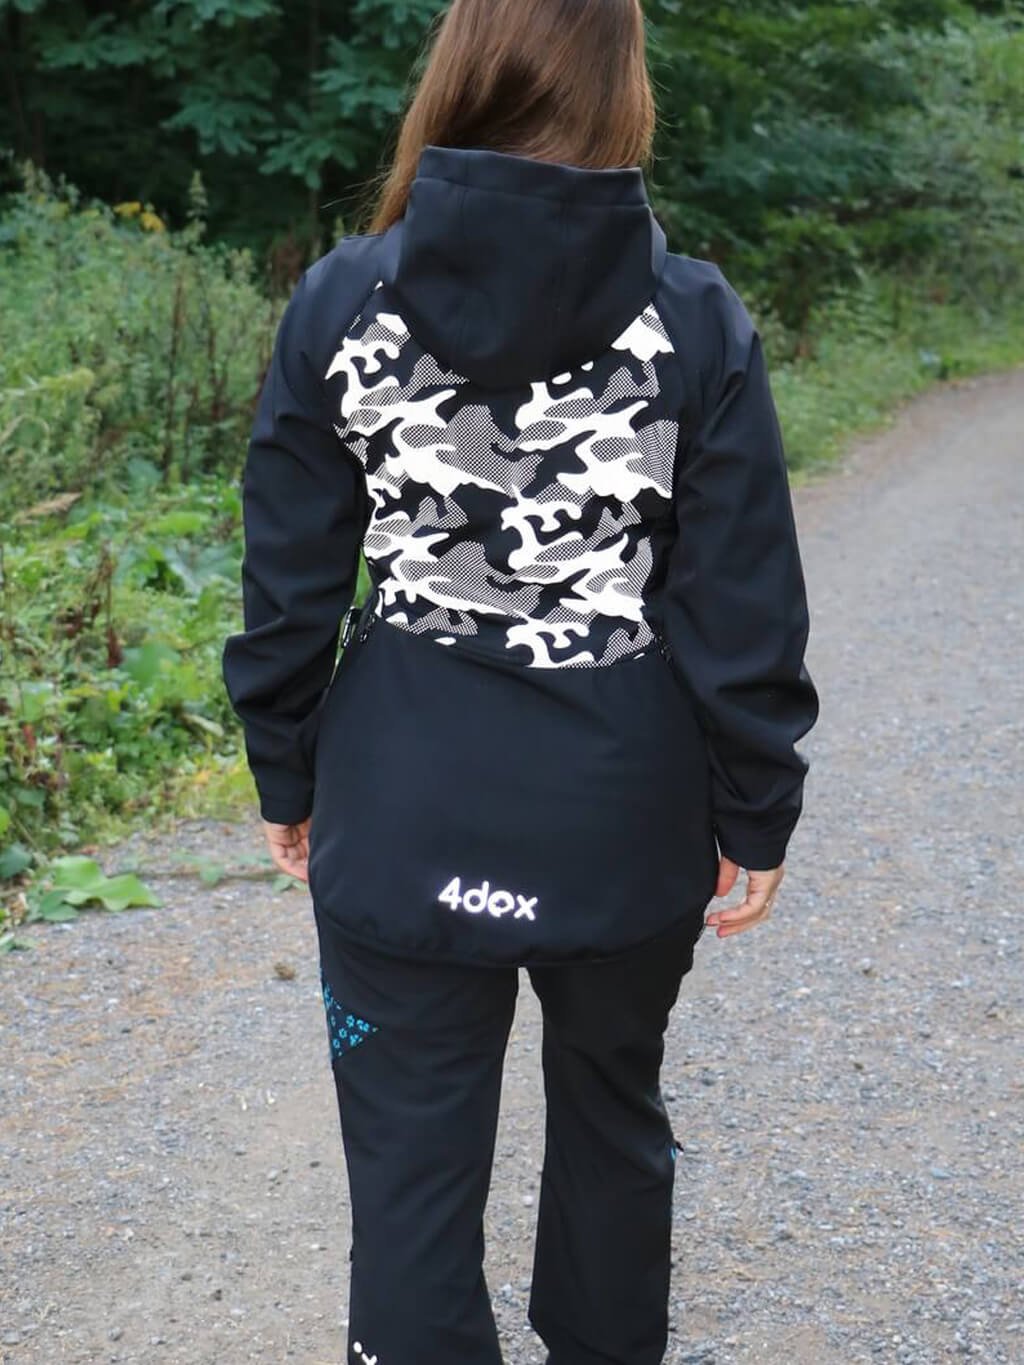 Women's training jacket reflective camouflage